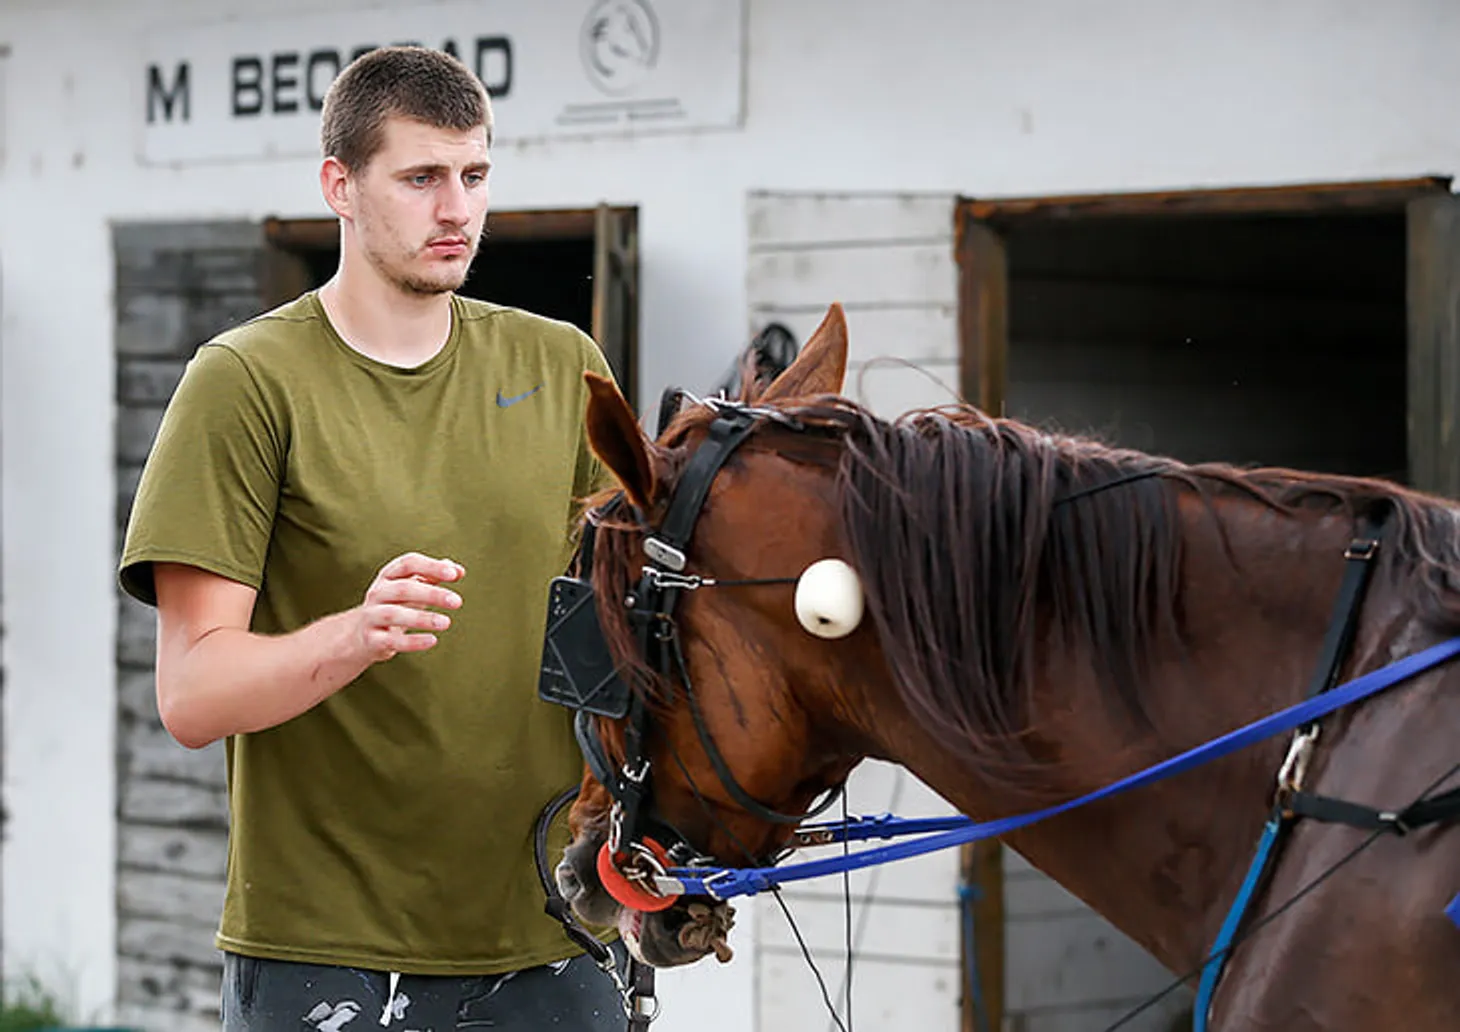 Йокич любит лошадей не меньше баскетбола. Вложил 1 млн евро в реконструкцию ипподрома в родном городе и хочет заняться конным спортом